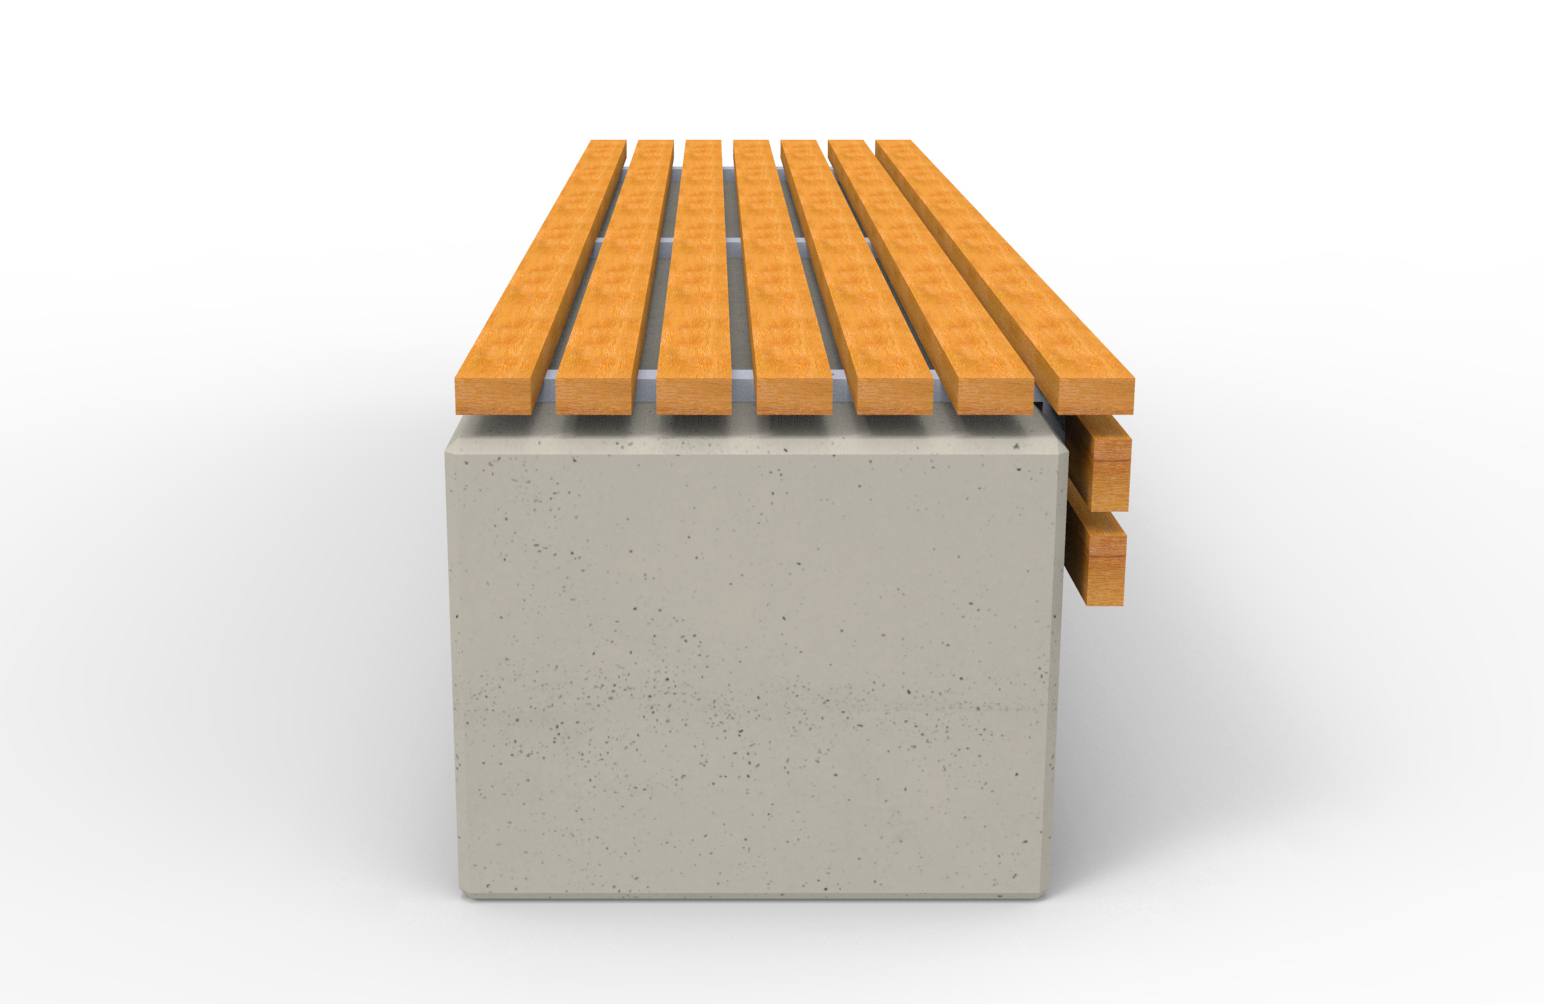 Ławka z betonu architektonicznego Relax 4.0 bez oparcia od producenta małej architektury parkowej. 